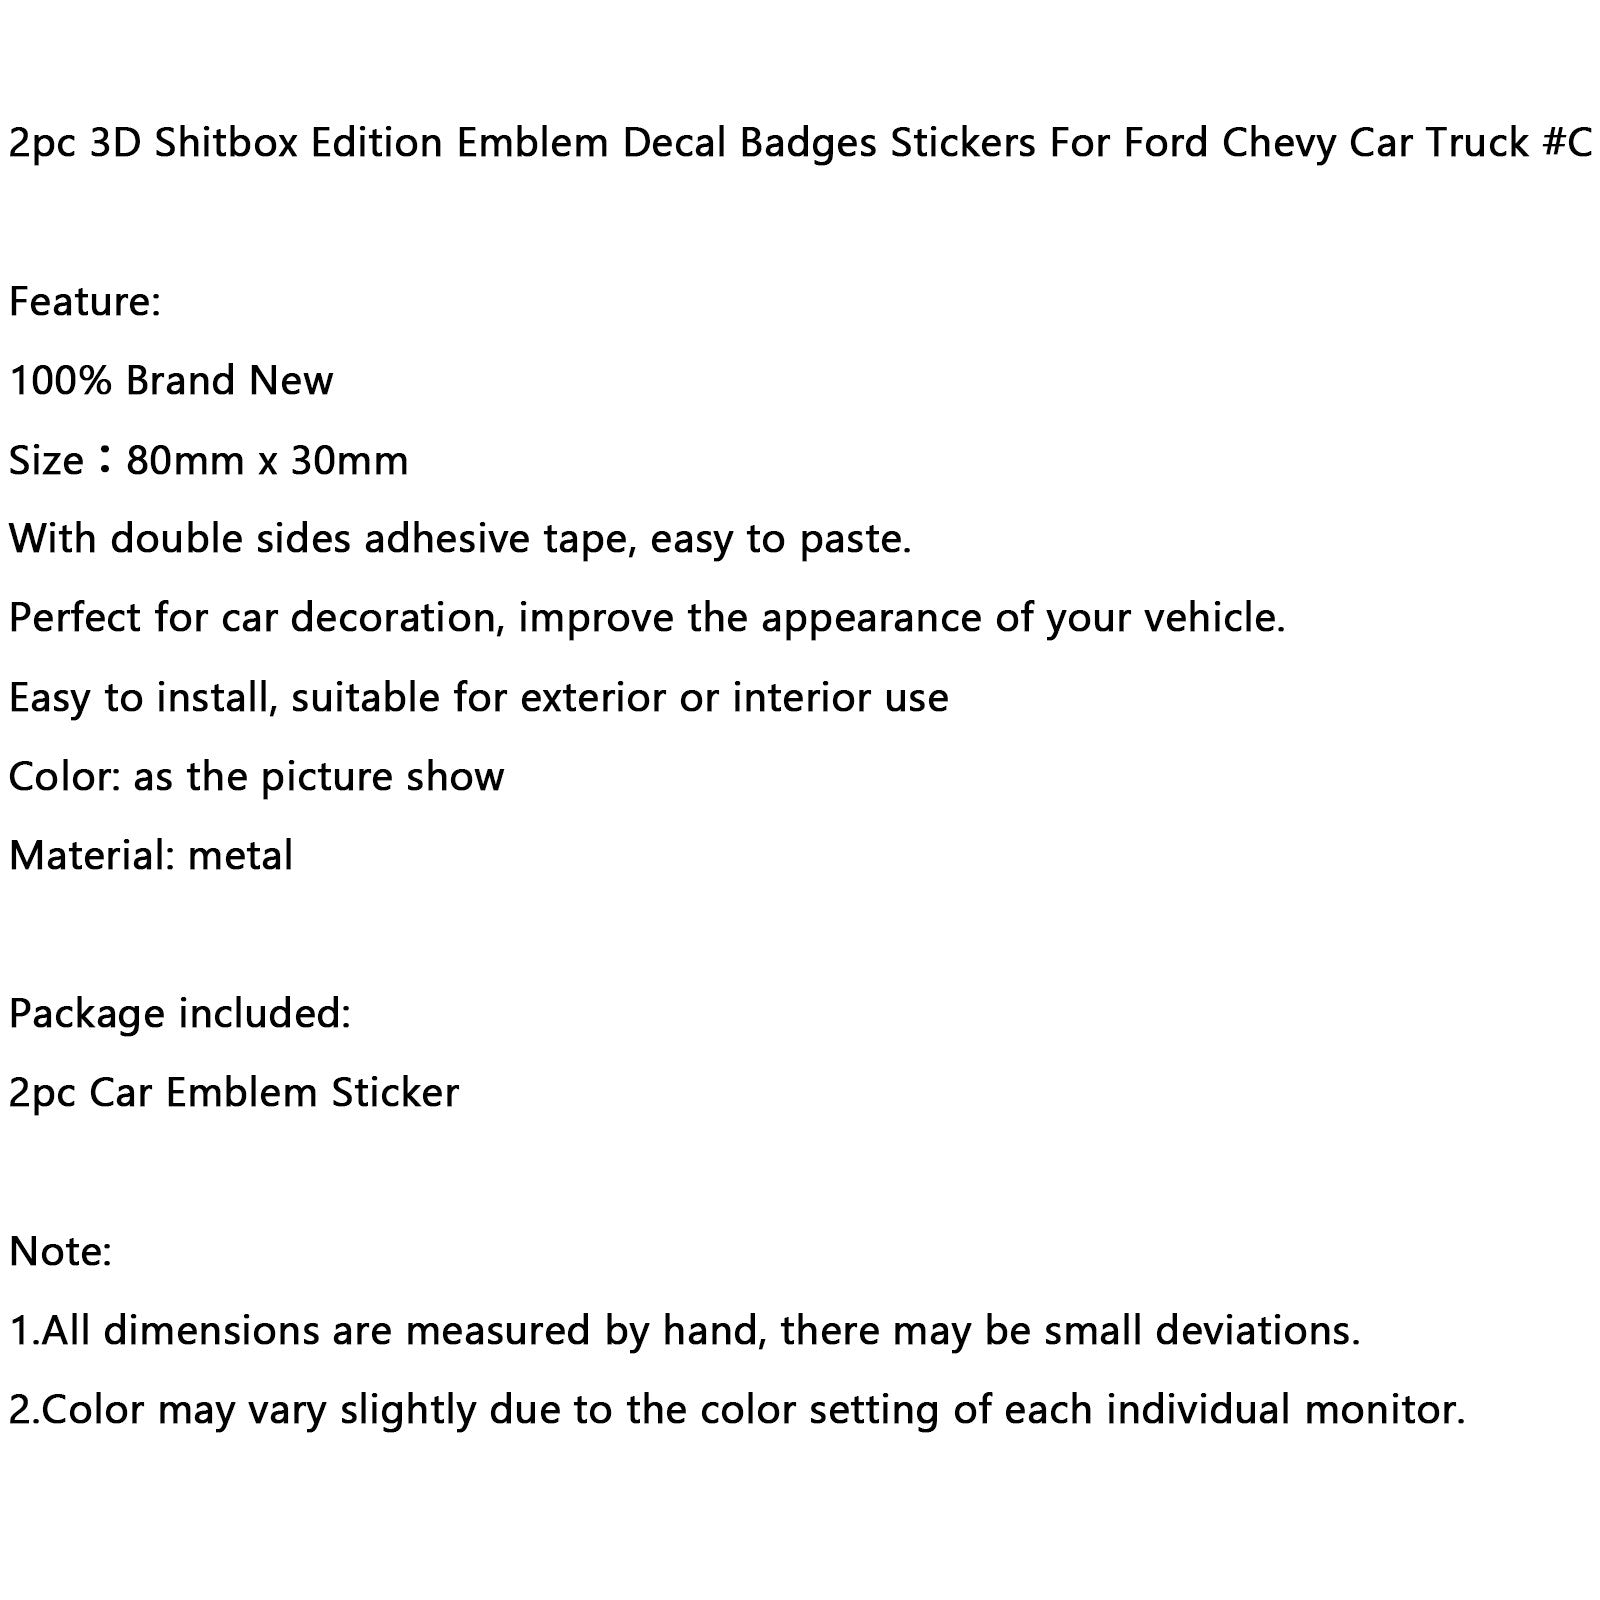 Emblema de edición Shitbox de 2 piezas, insignias adhesivas para Ford Chevr, coche, camión #C genérico